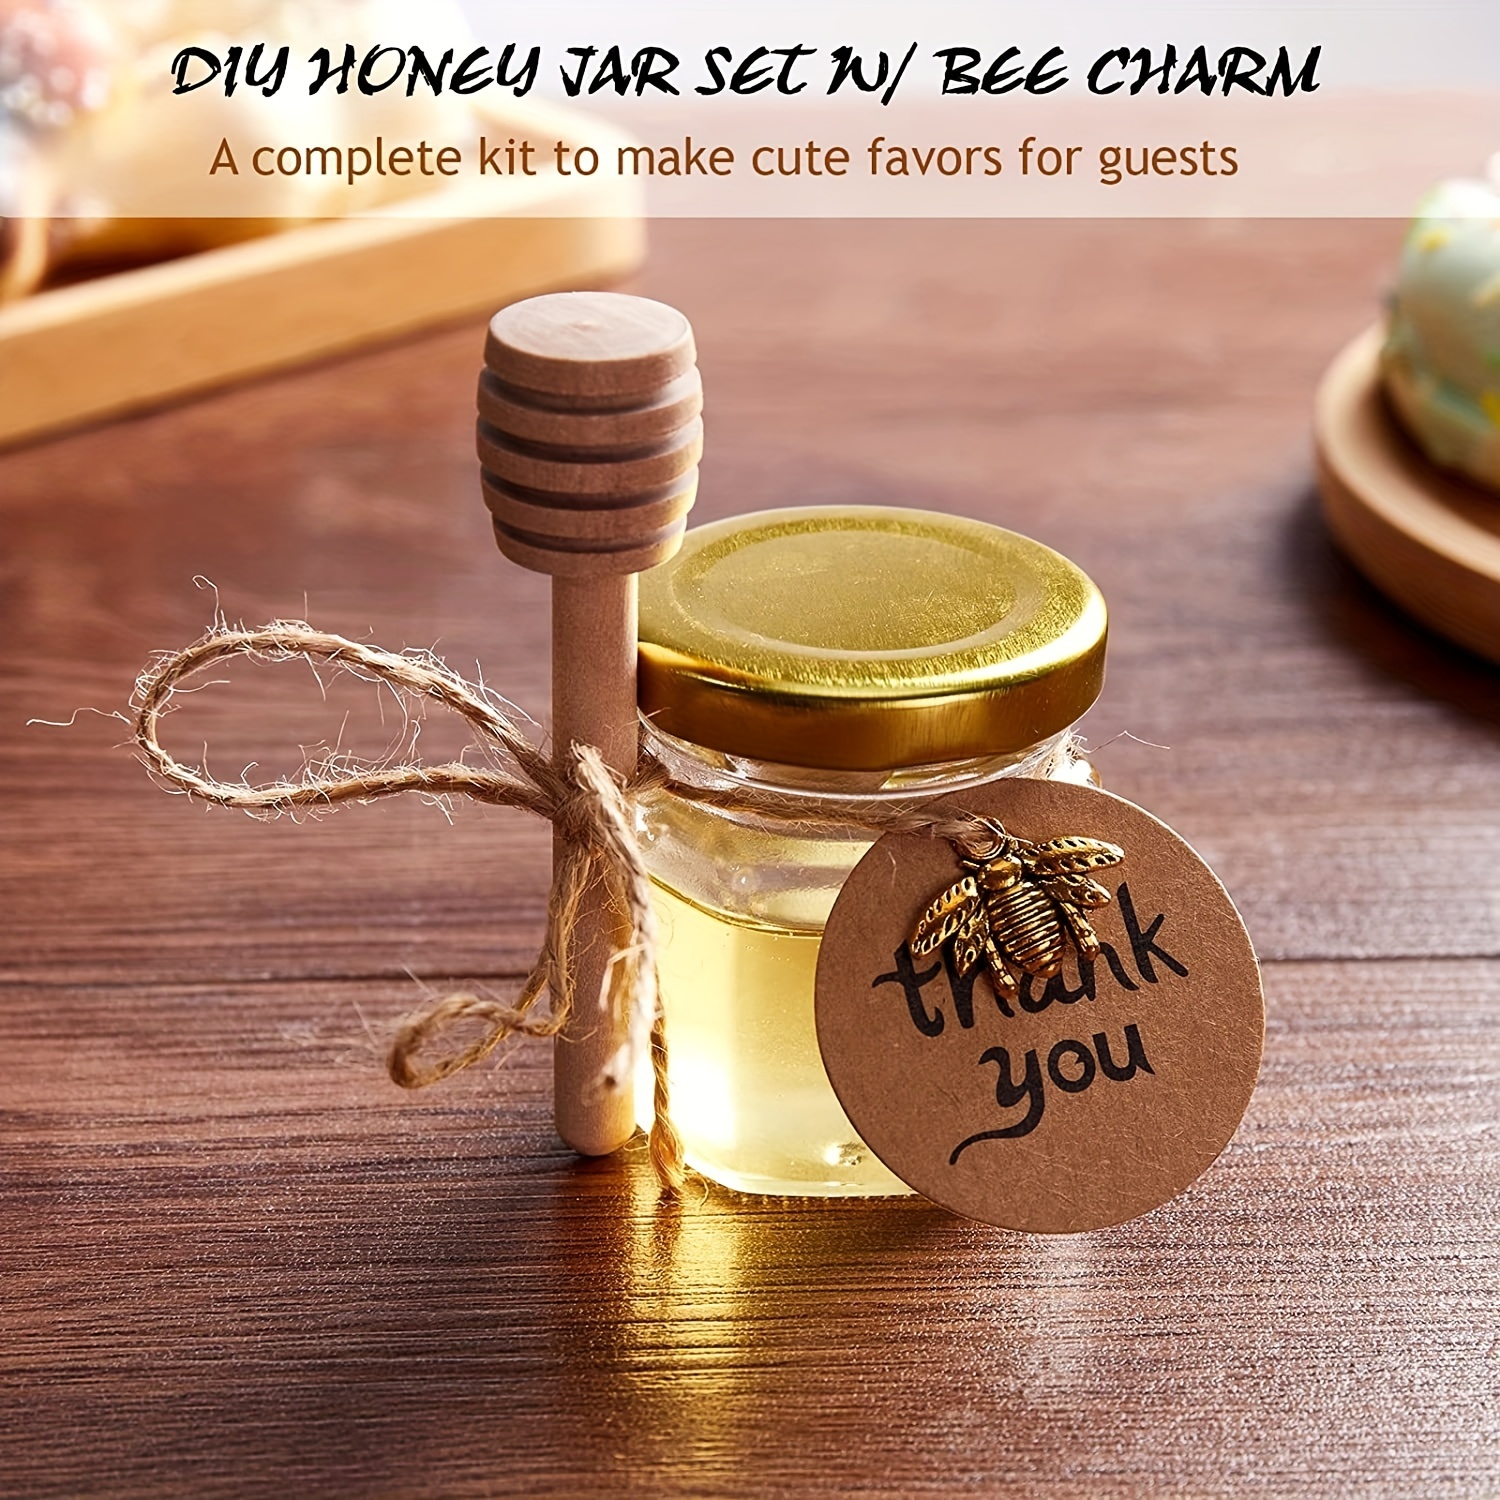  The Honey Jar Bee-luxe Evento, despedida de soltera o recuerdos  de boda, tarro hexagonal de 2 onzas de miel cruda pura con cuchara de miel  de madera y dije hexagonal esmaltado –